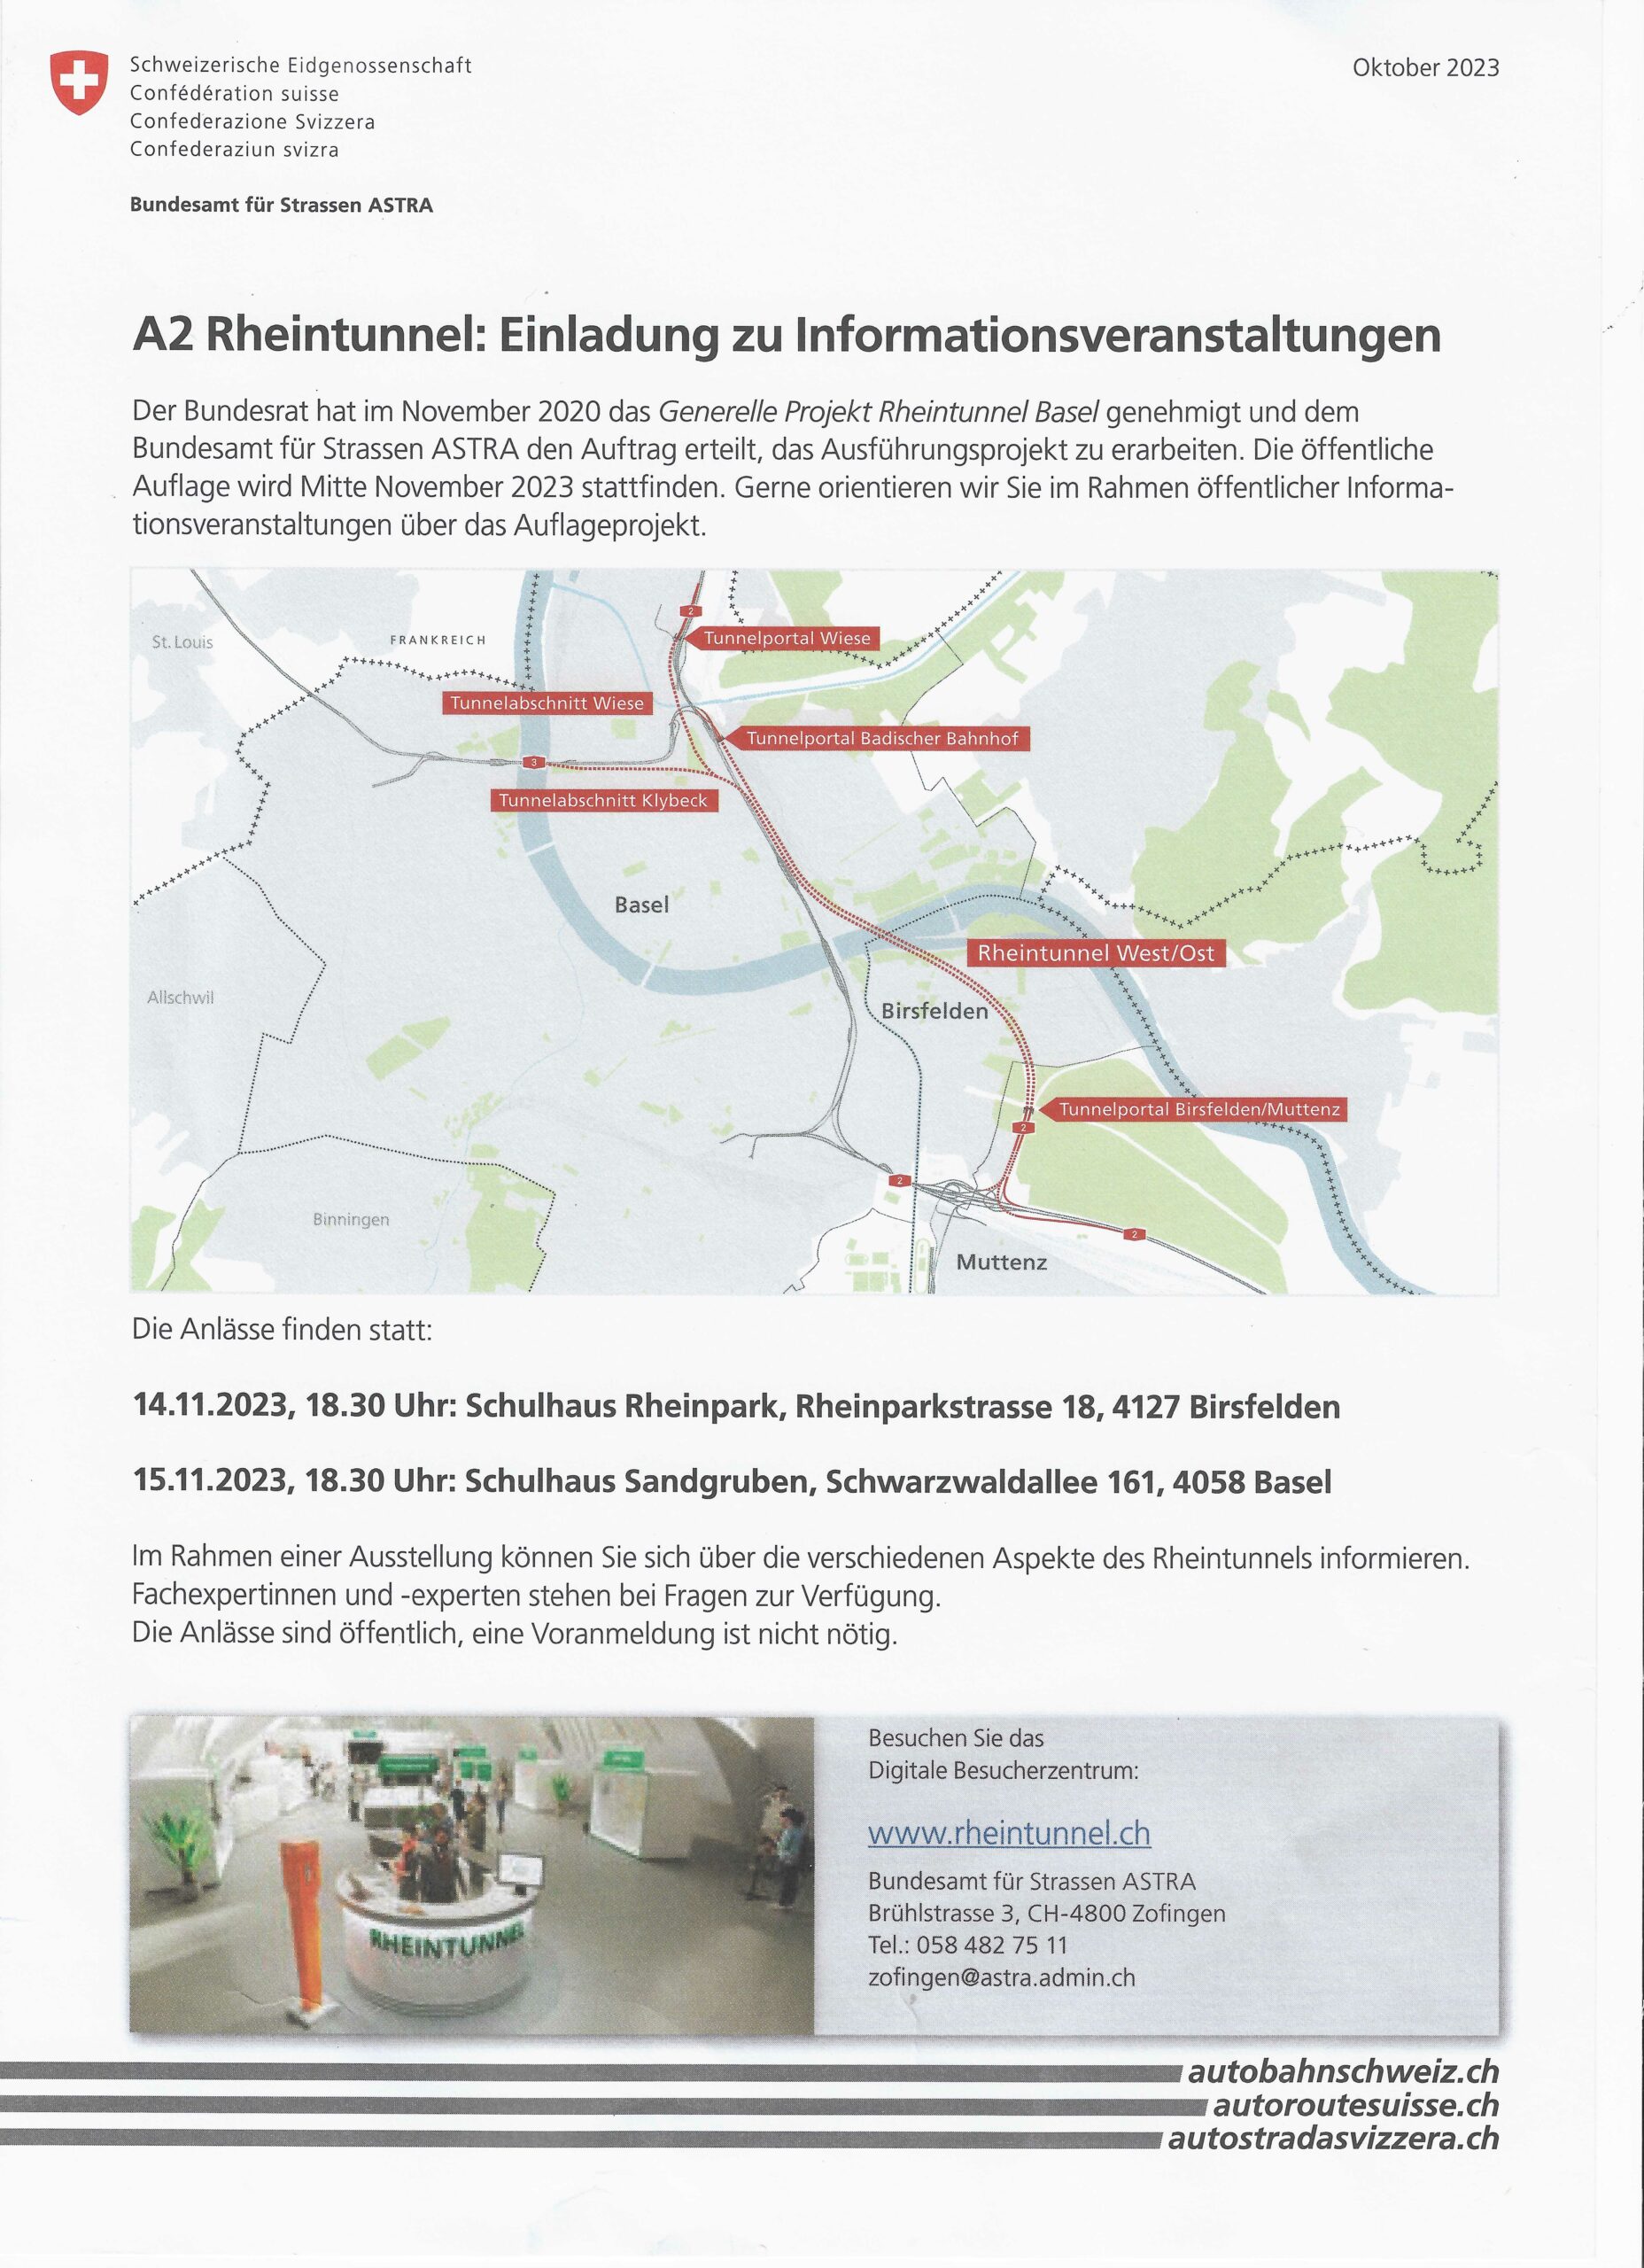 Informationsveranstaltung Rheintunnel